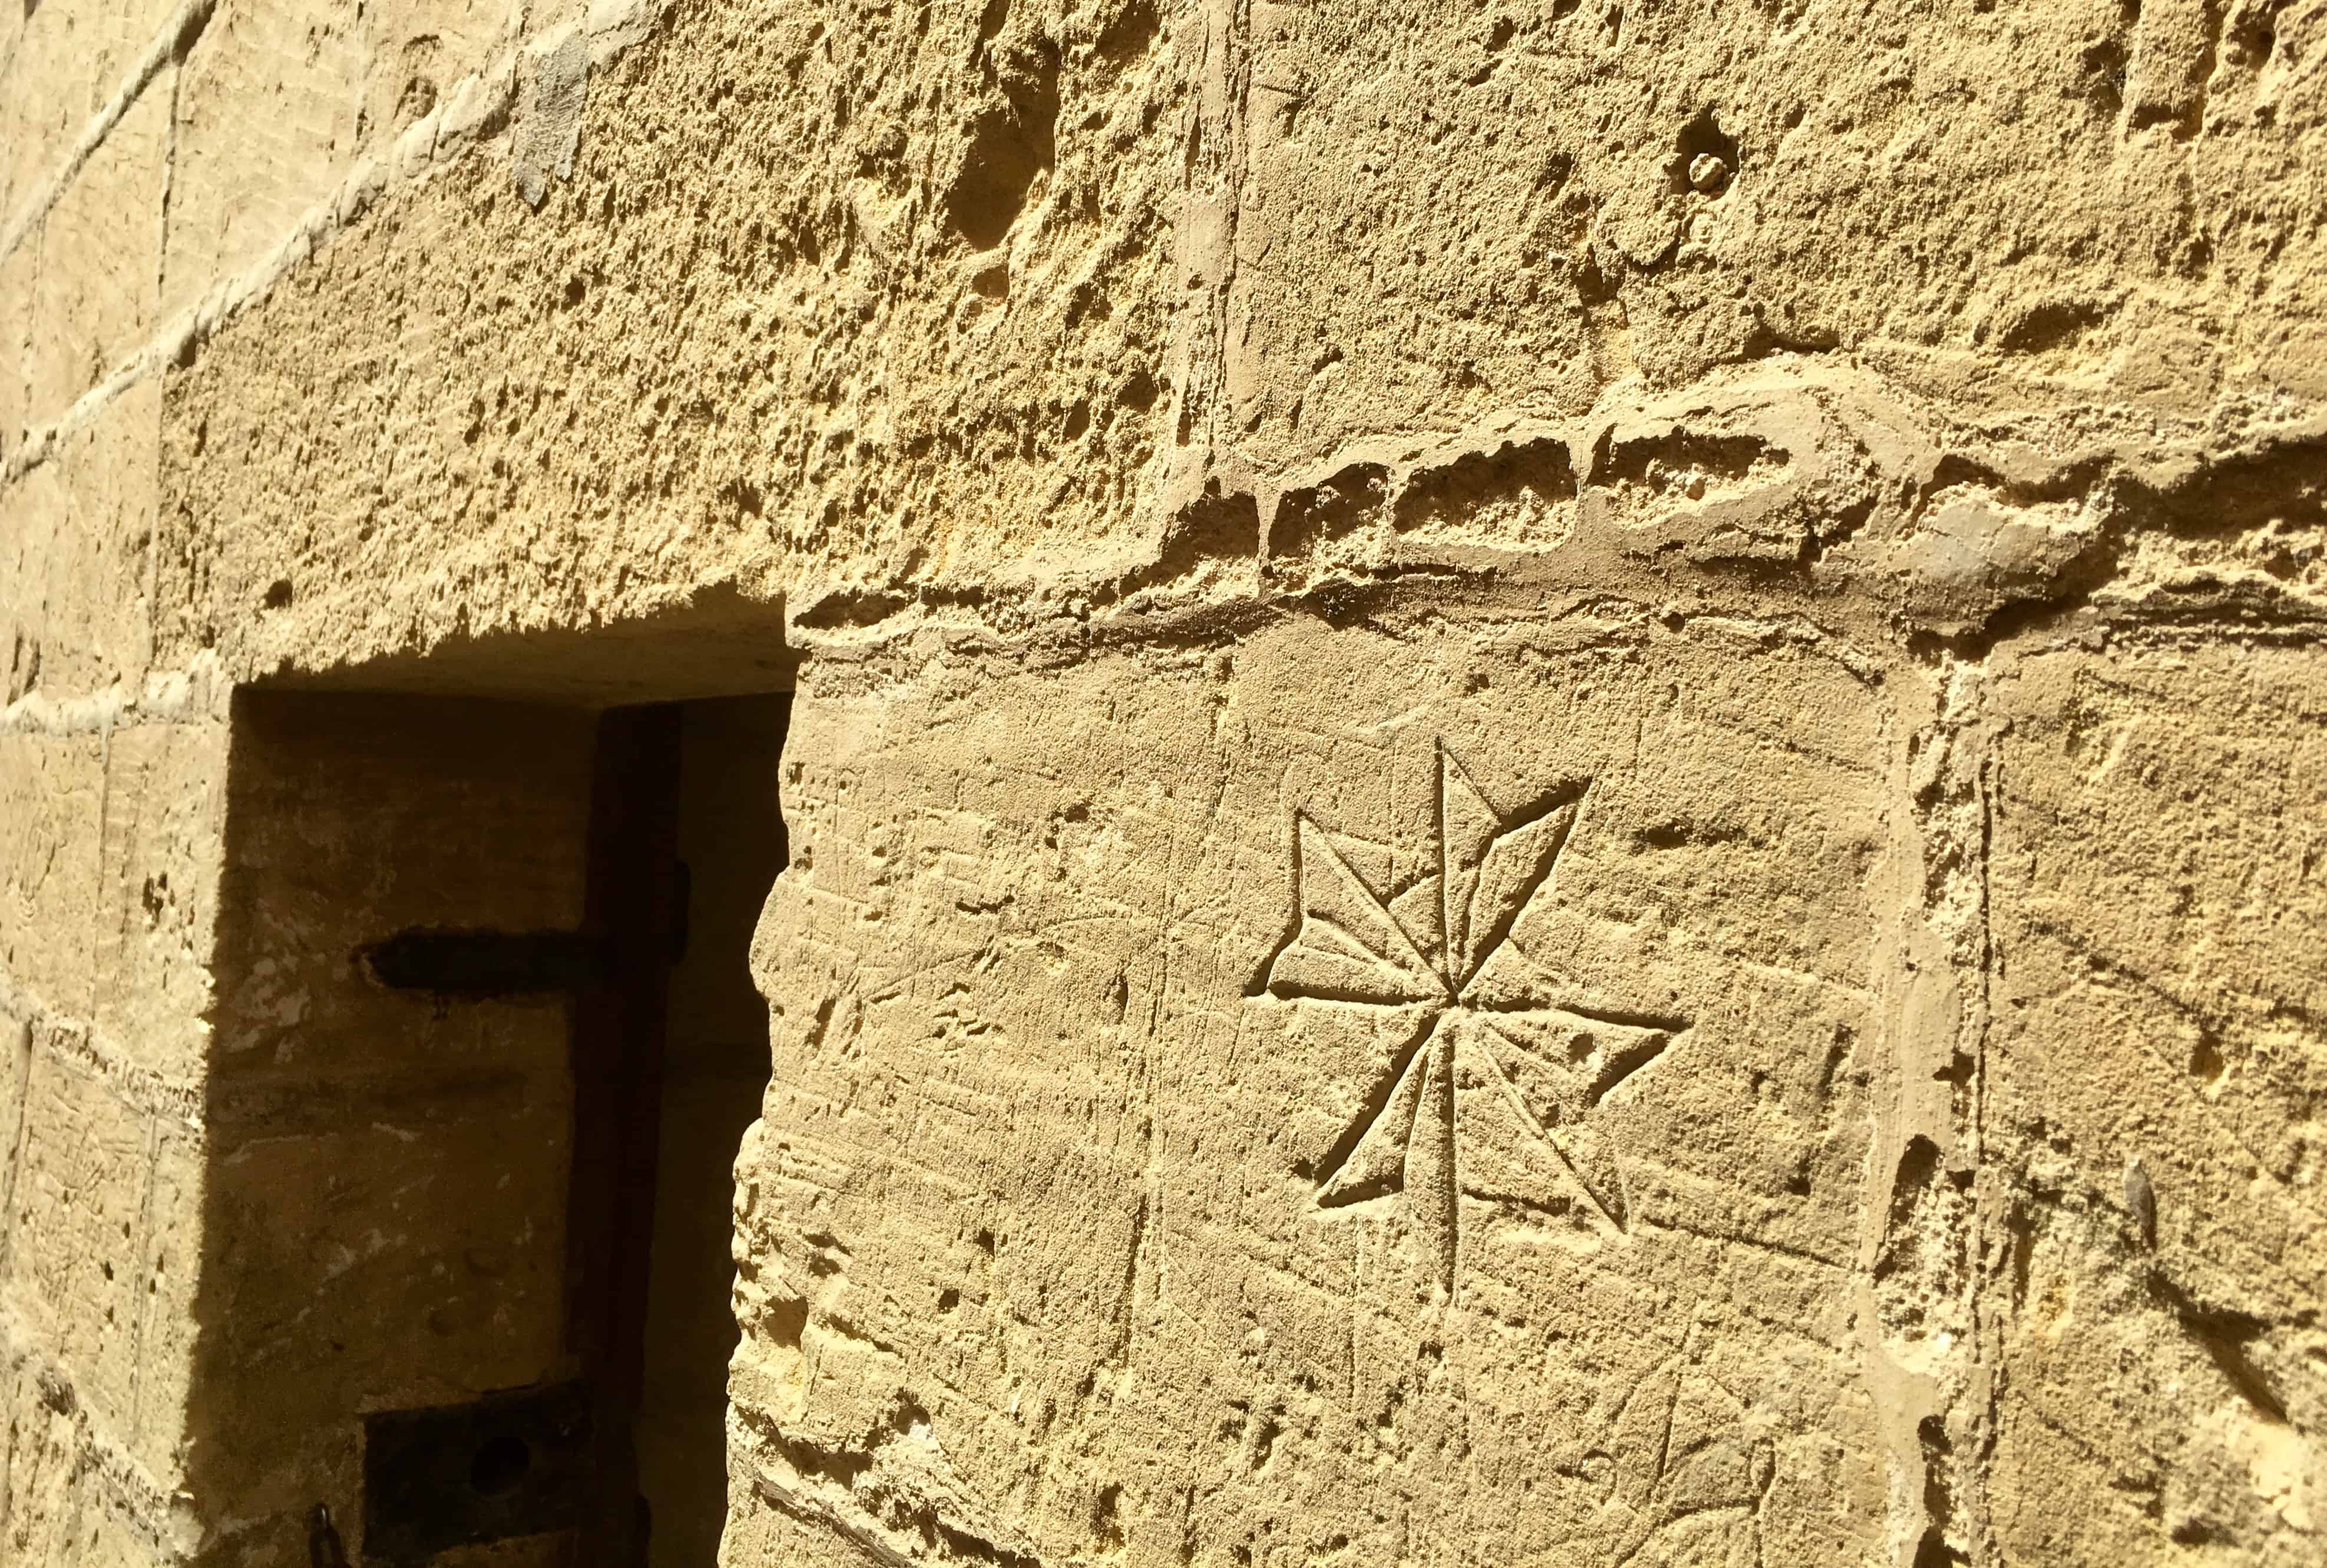 Graffiti of a Maltese Cross in the Old Prison, Citadella, Gozo